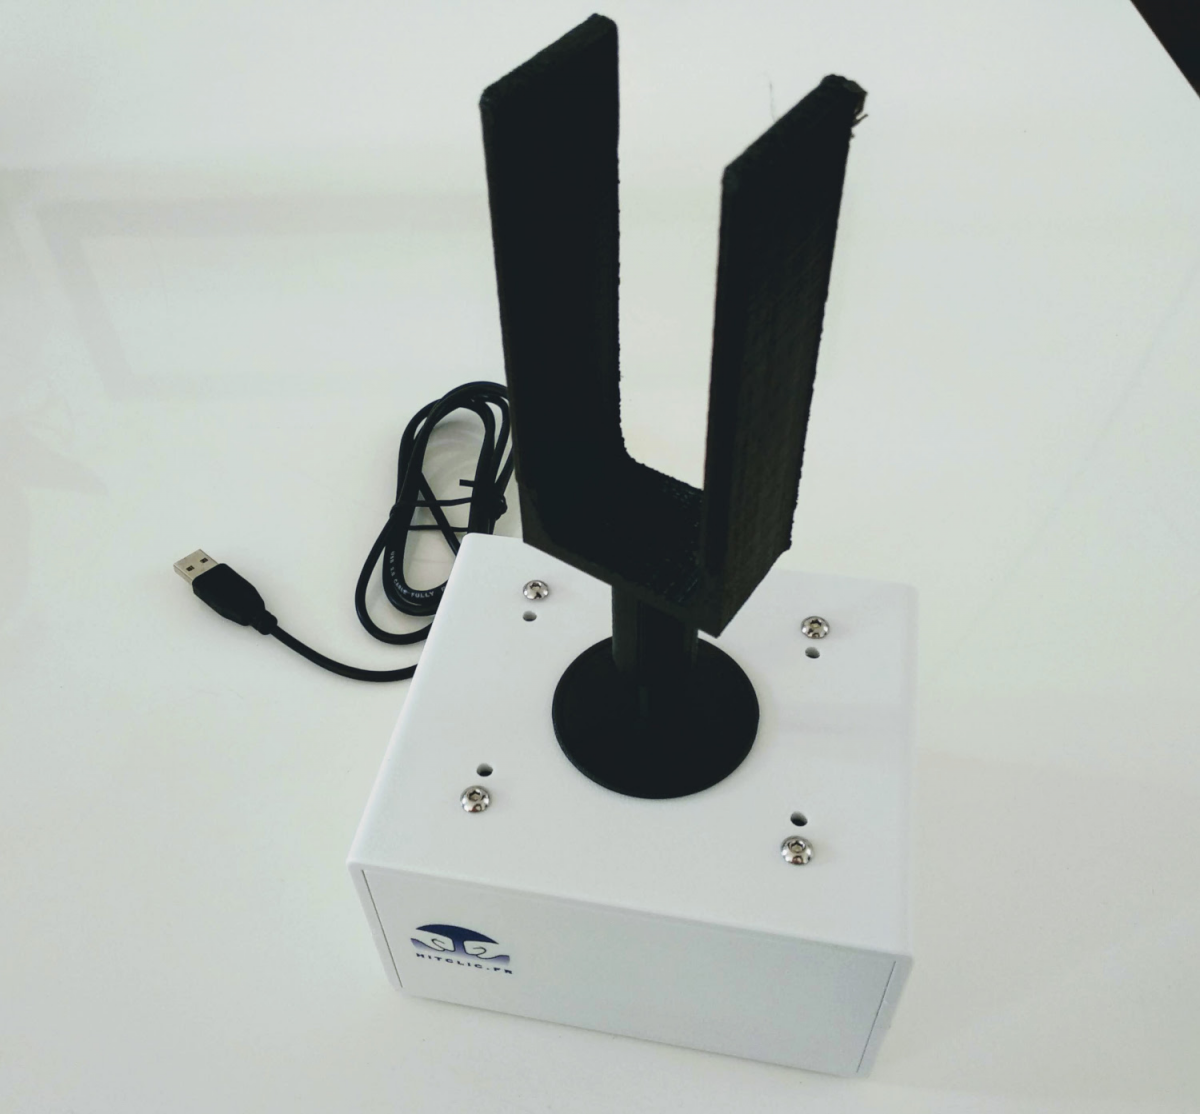 Joystick analogique 360 USB - poignée verticale